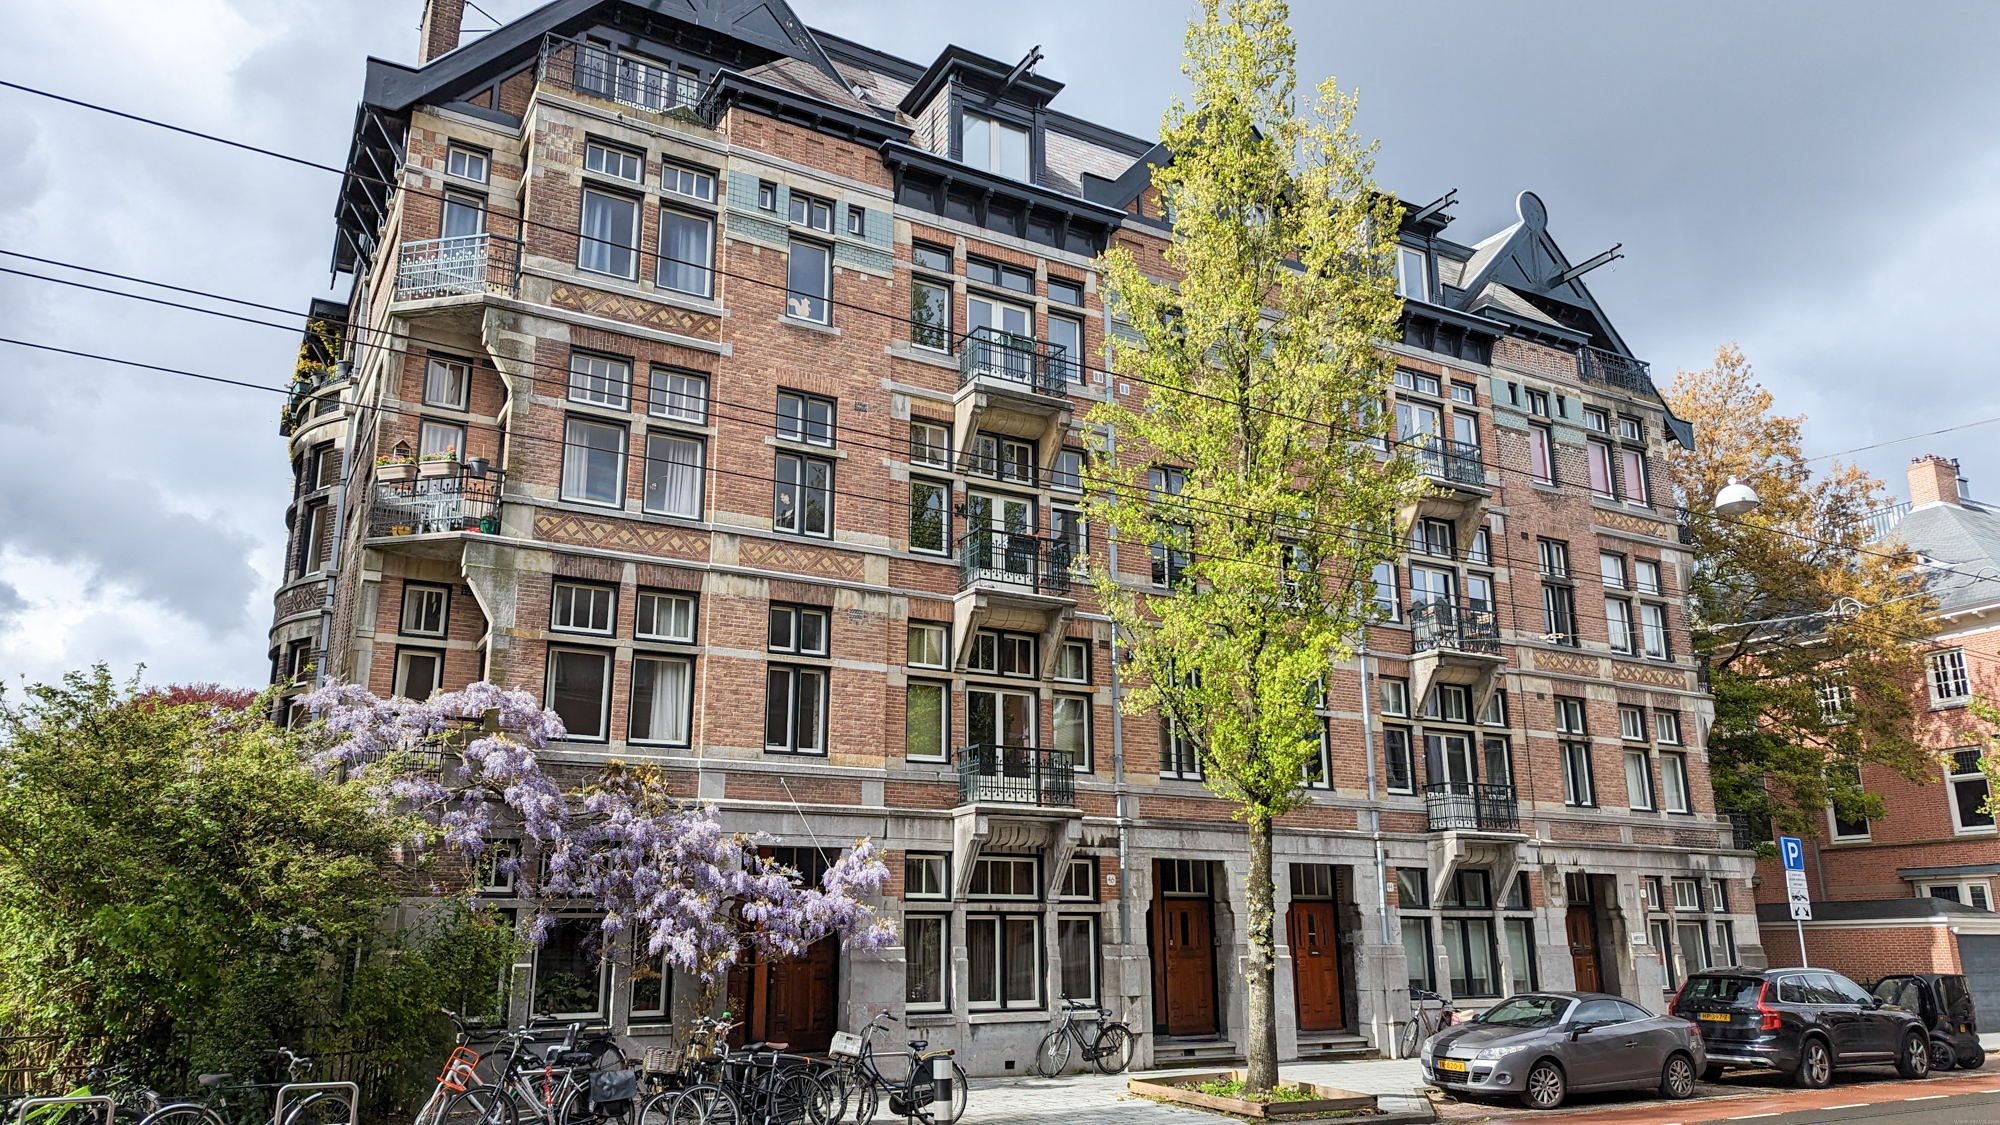 Tehlové fasády sú ikonickým prvkom amsterdamskej architektúry.